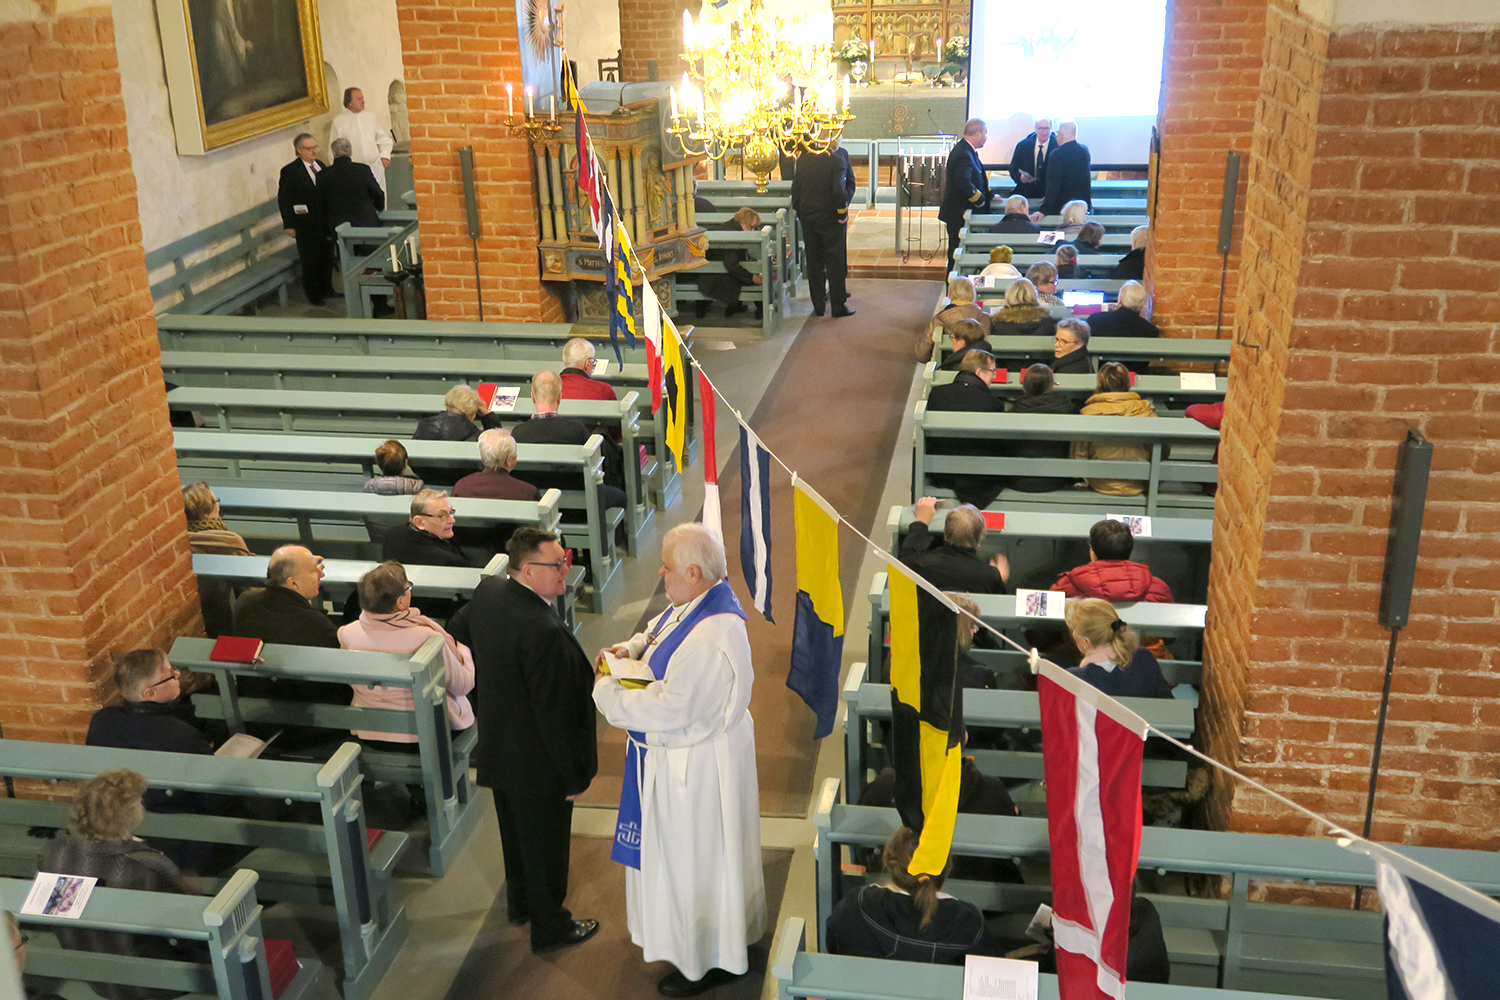 Maarian kirkko sisältä, ihmisiä istuu penkeissä, heidän yllään värikkäitä laivalippuja